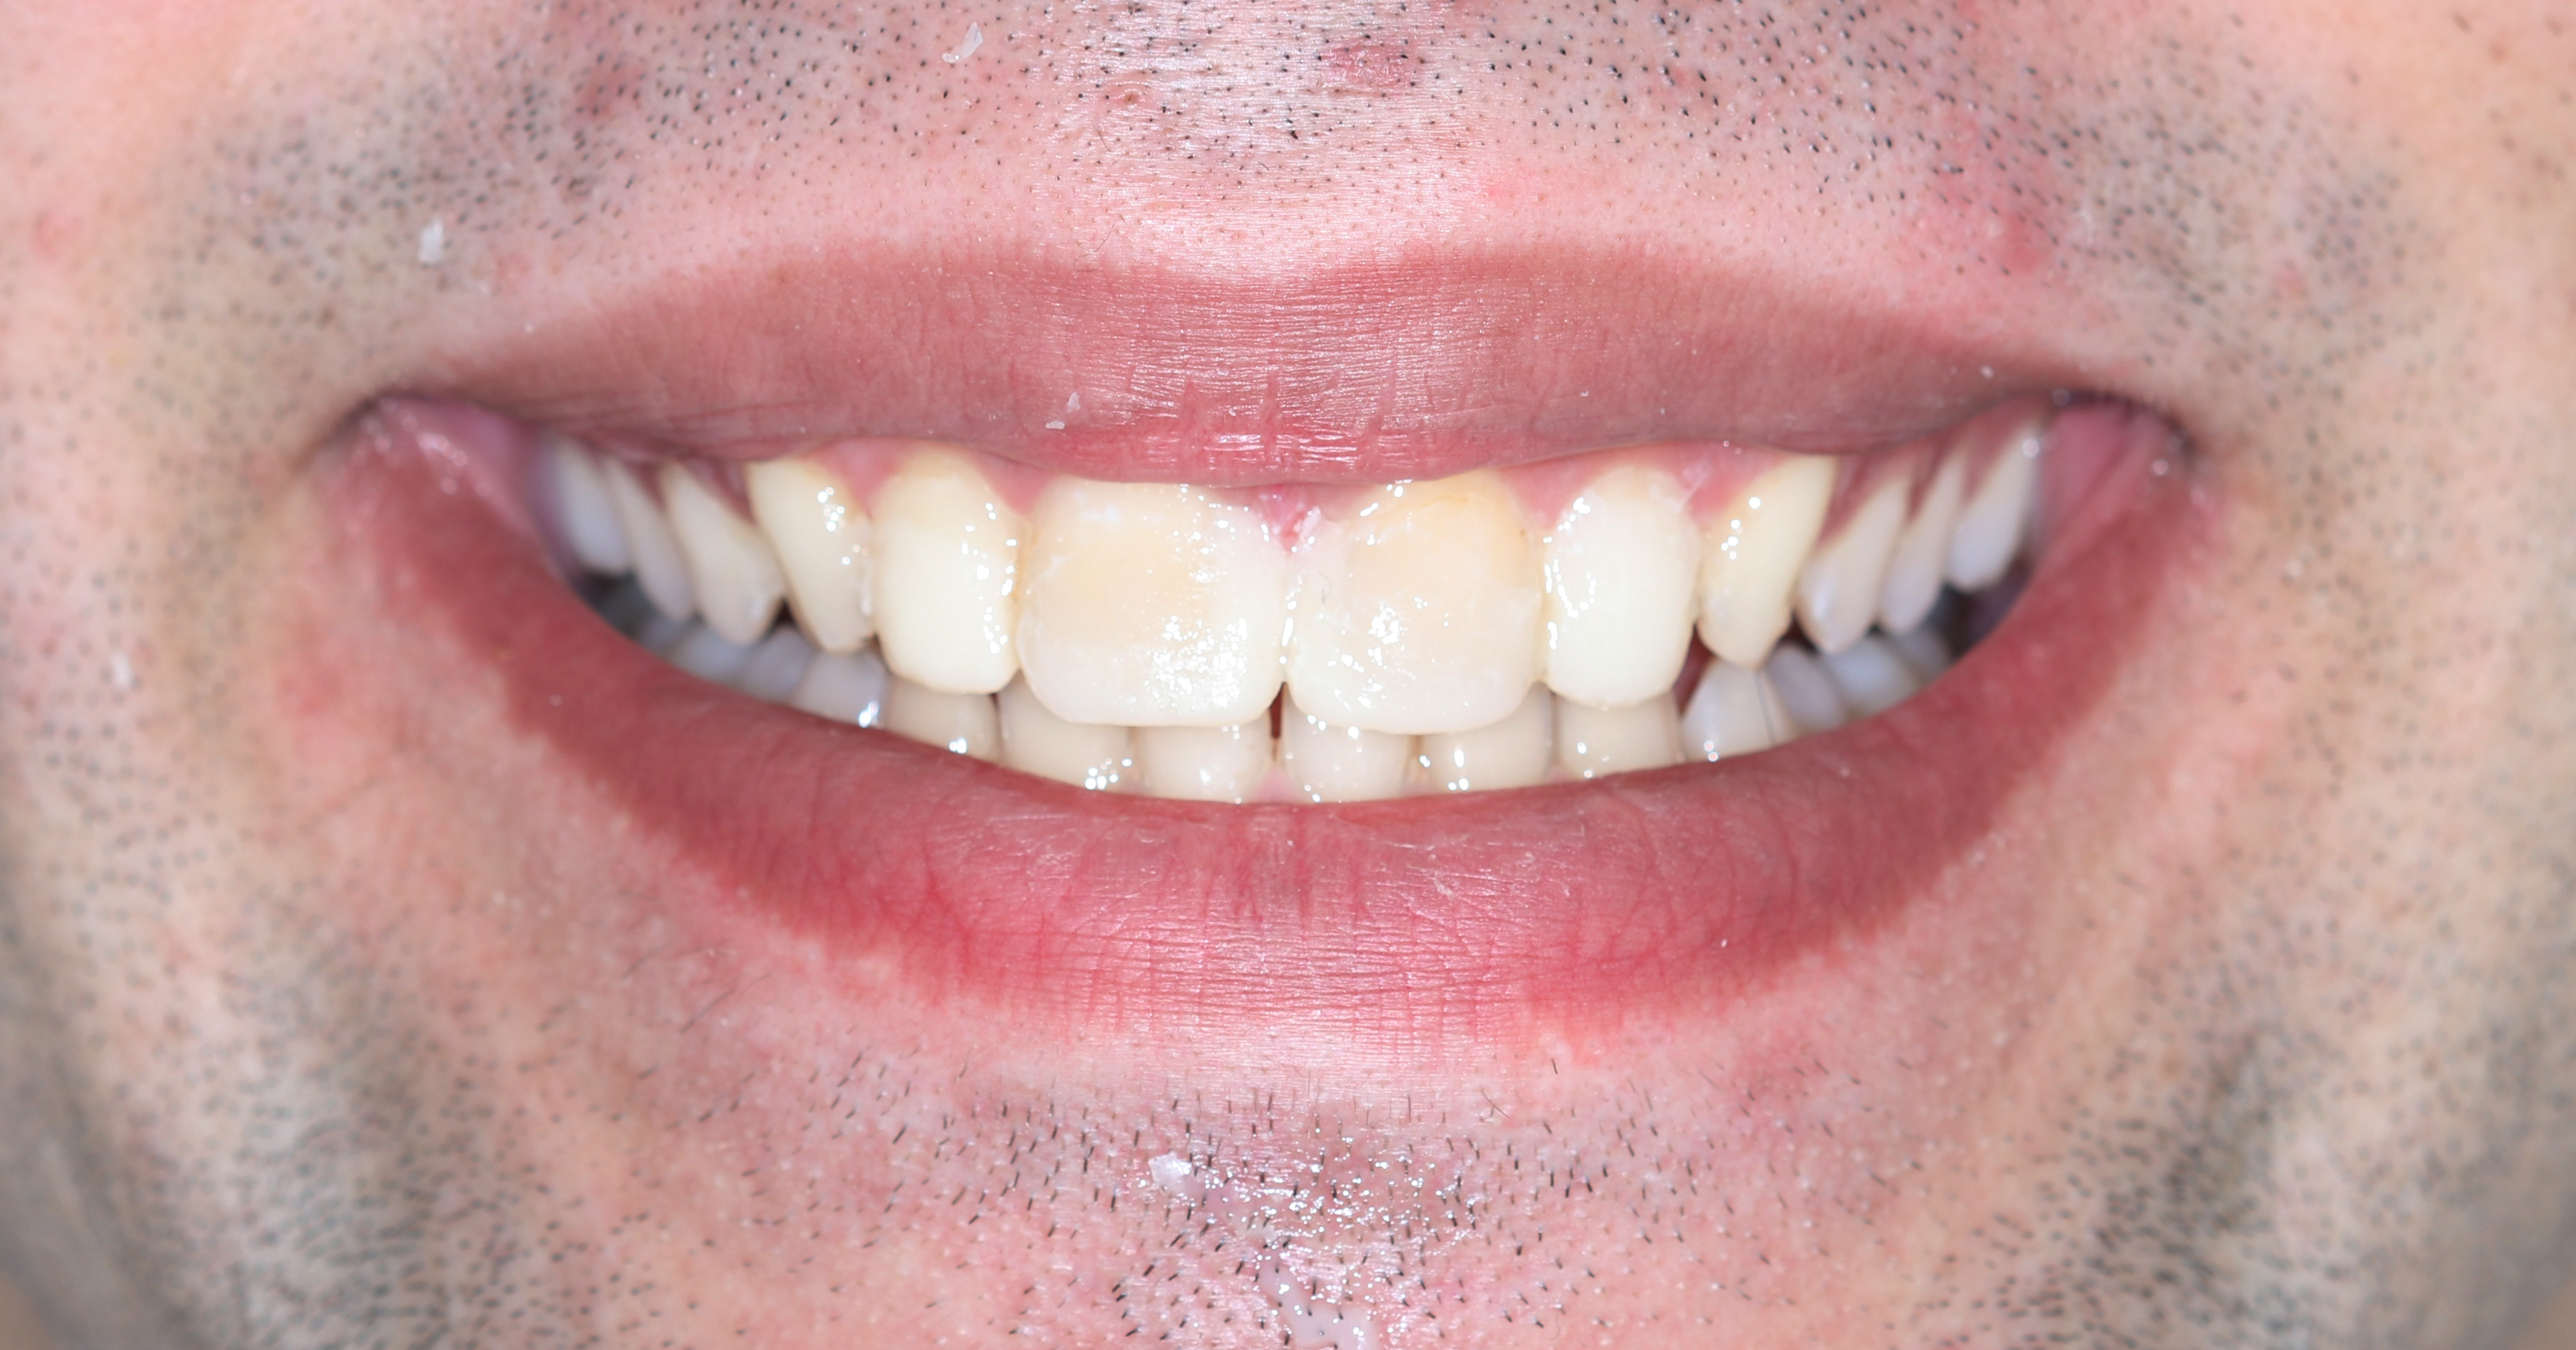 Μεταφορά του διαγνωστικού κερώματος στο στόμα ώστε ο ασθενής να αξιολογήσει το σχήματων δοντιών πριν την κατασκευή των όψεων